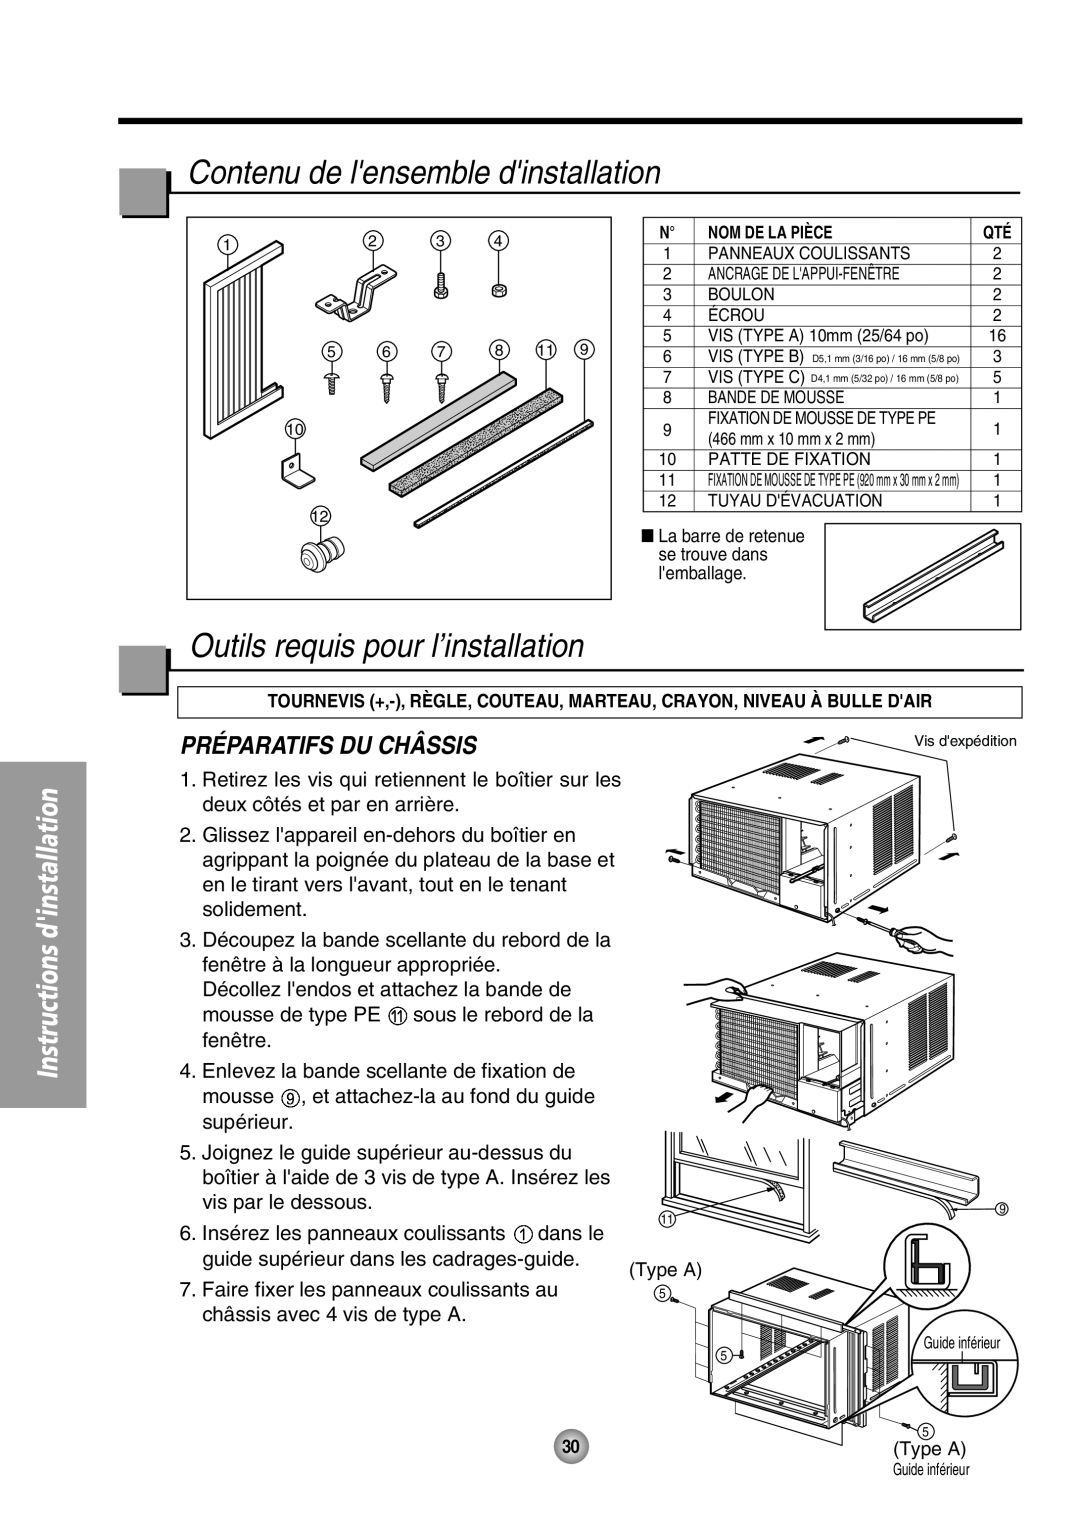 Panasonic CW-XC64HU manual Contenu de lensemble dinstallation, Outils requis pour l’installation, Préparatifs Du Châssis 